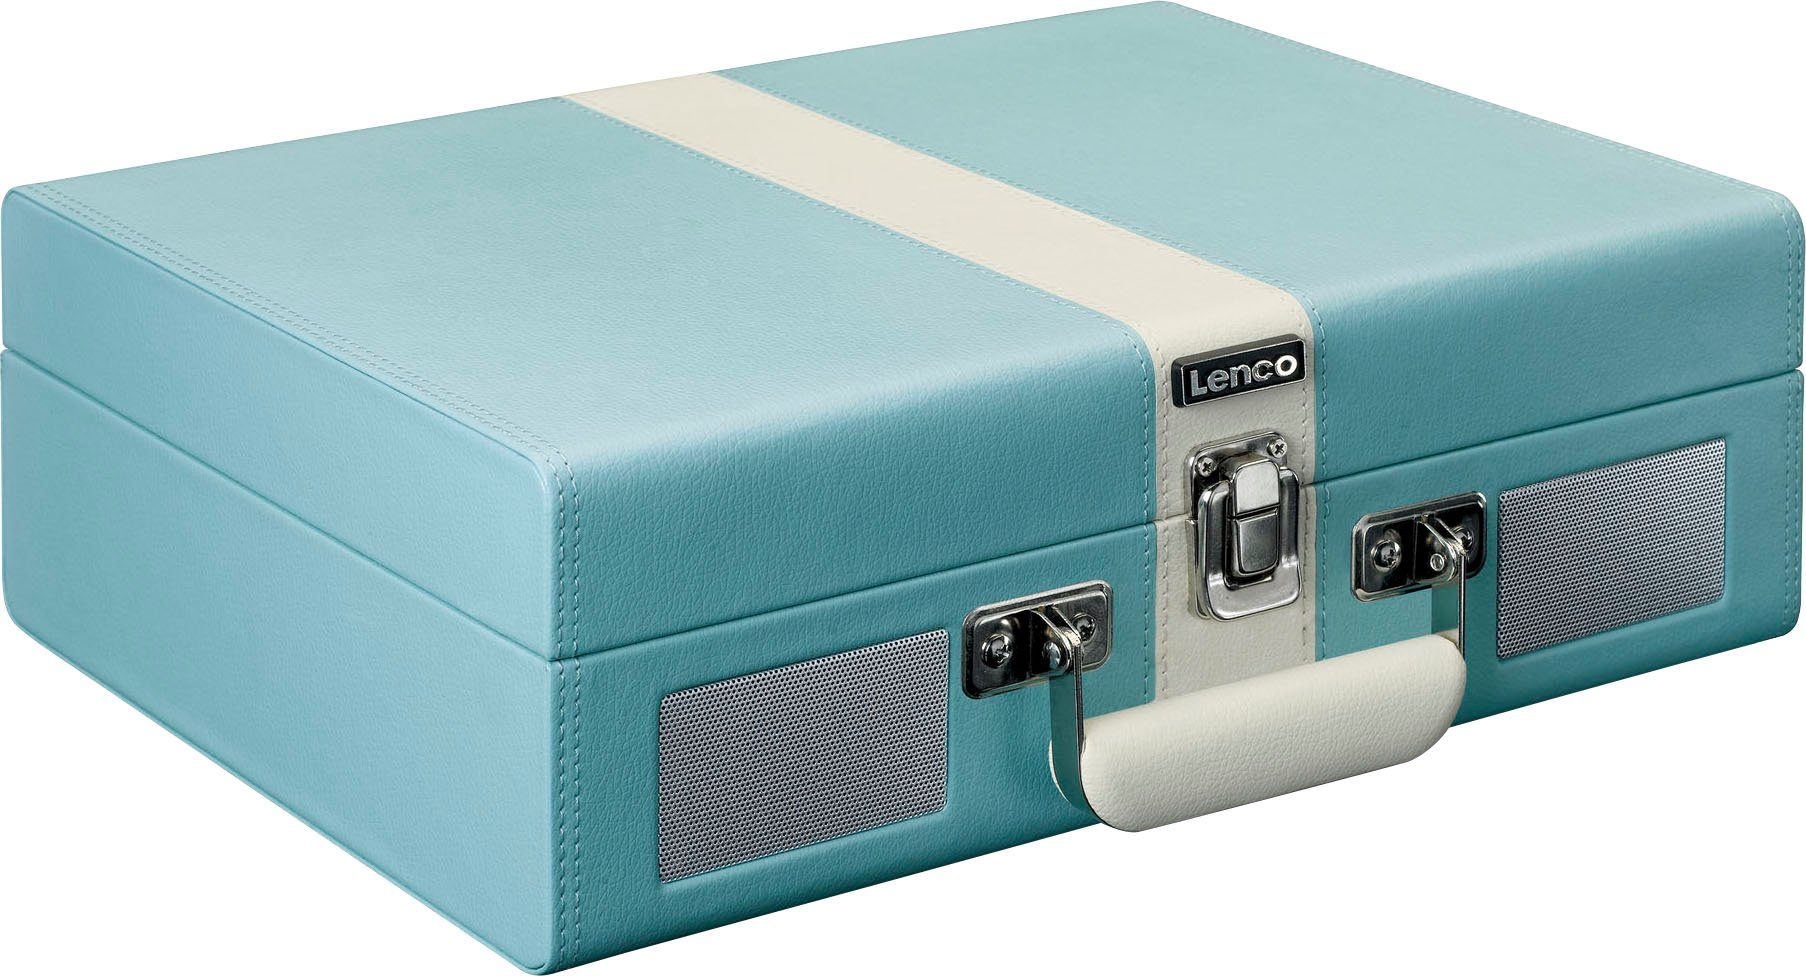 Lenco Koffer-Plattenspieler mit BT eingebauten Plattenspieler Blau-Weiß (Riemenantrieb) und Lsp